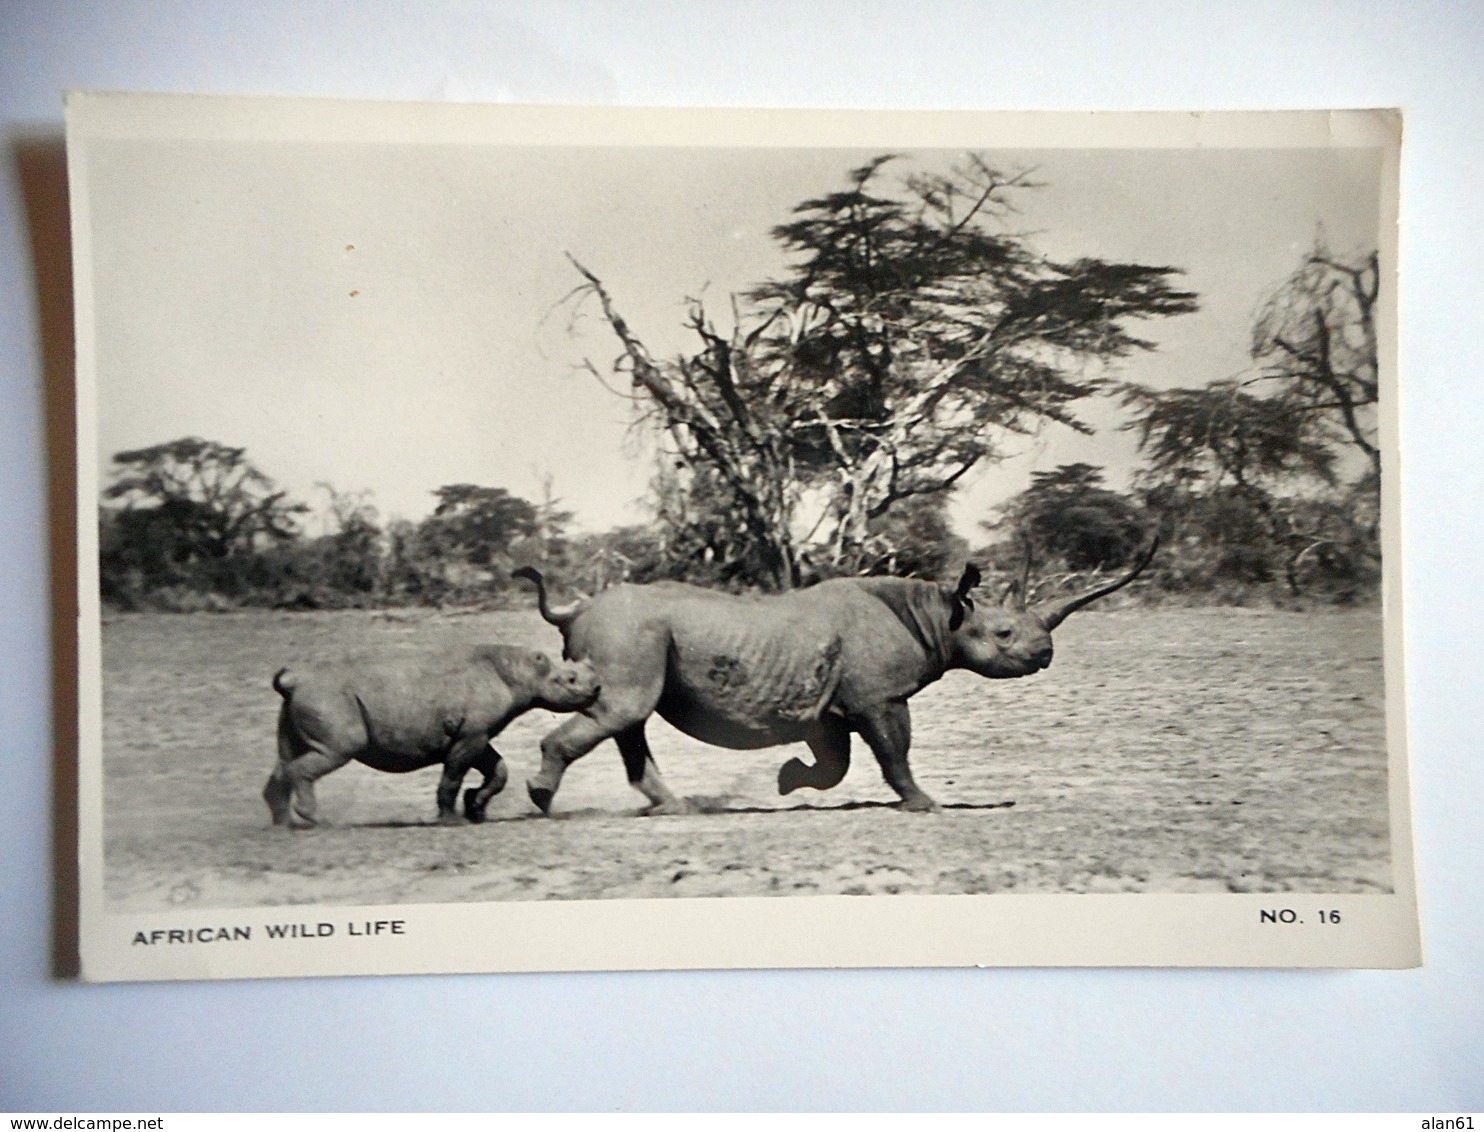 CPSM AFRICAN WILD LIFE N 16 RHINOCEROS - Rhinocéros